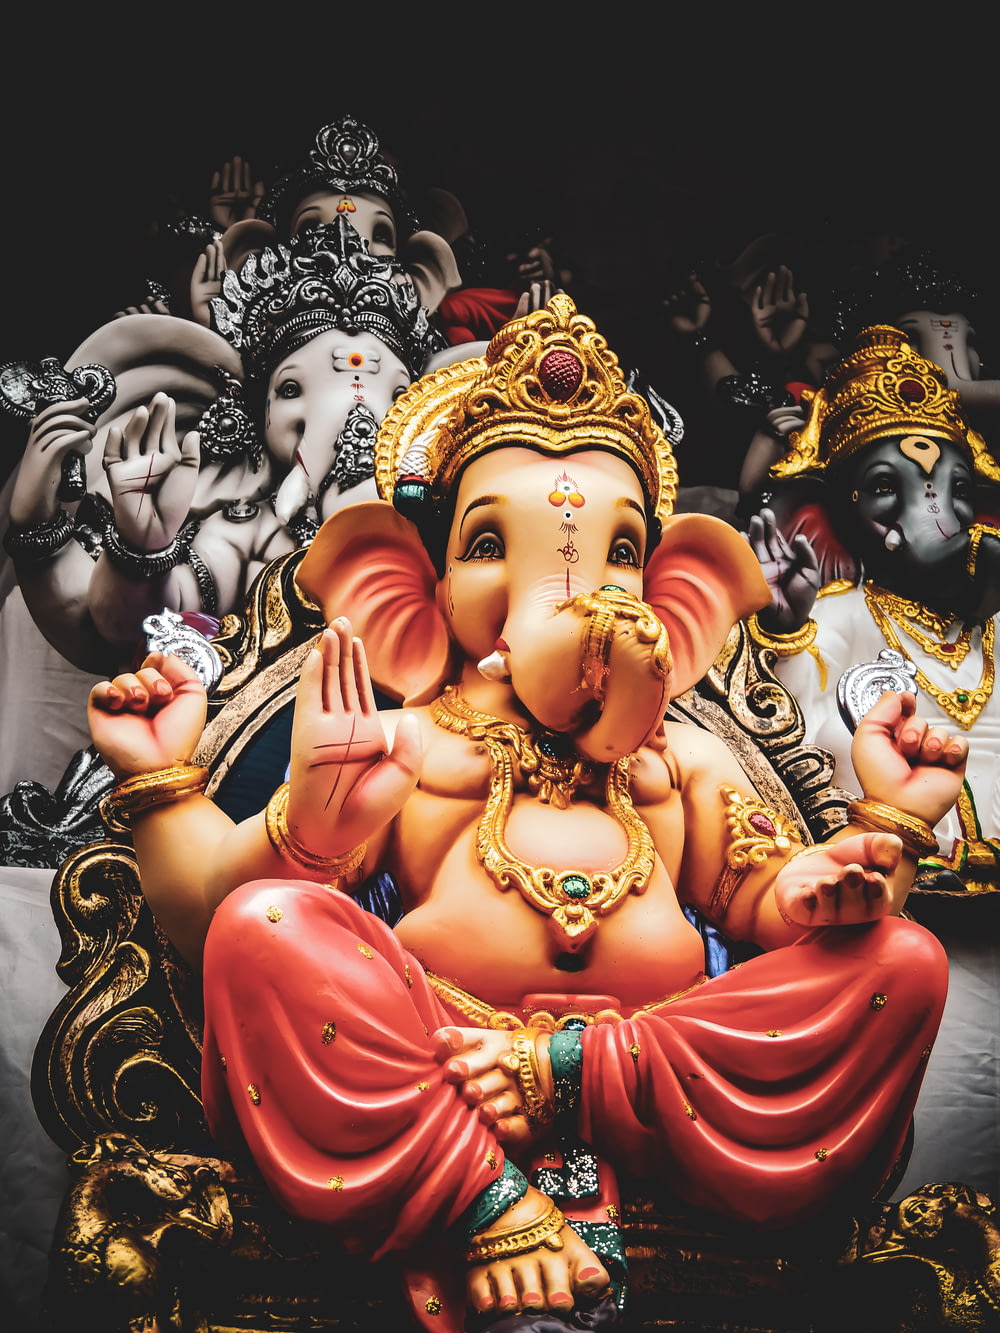 três estatuetas do Senhor Ganesha